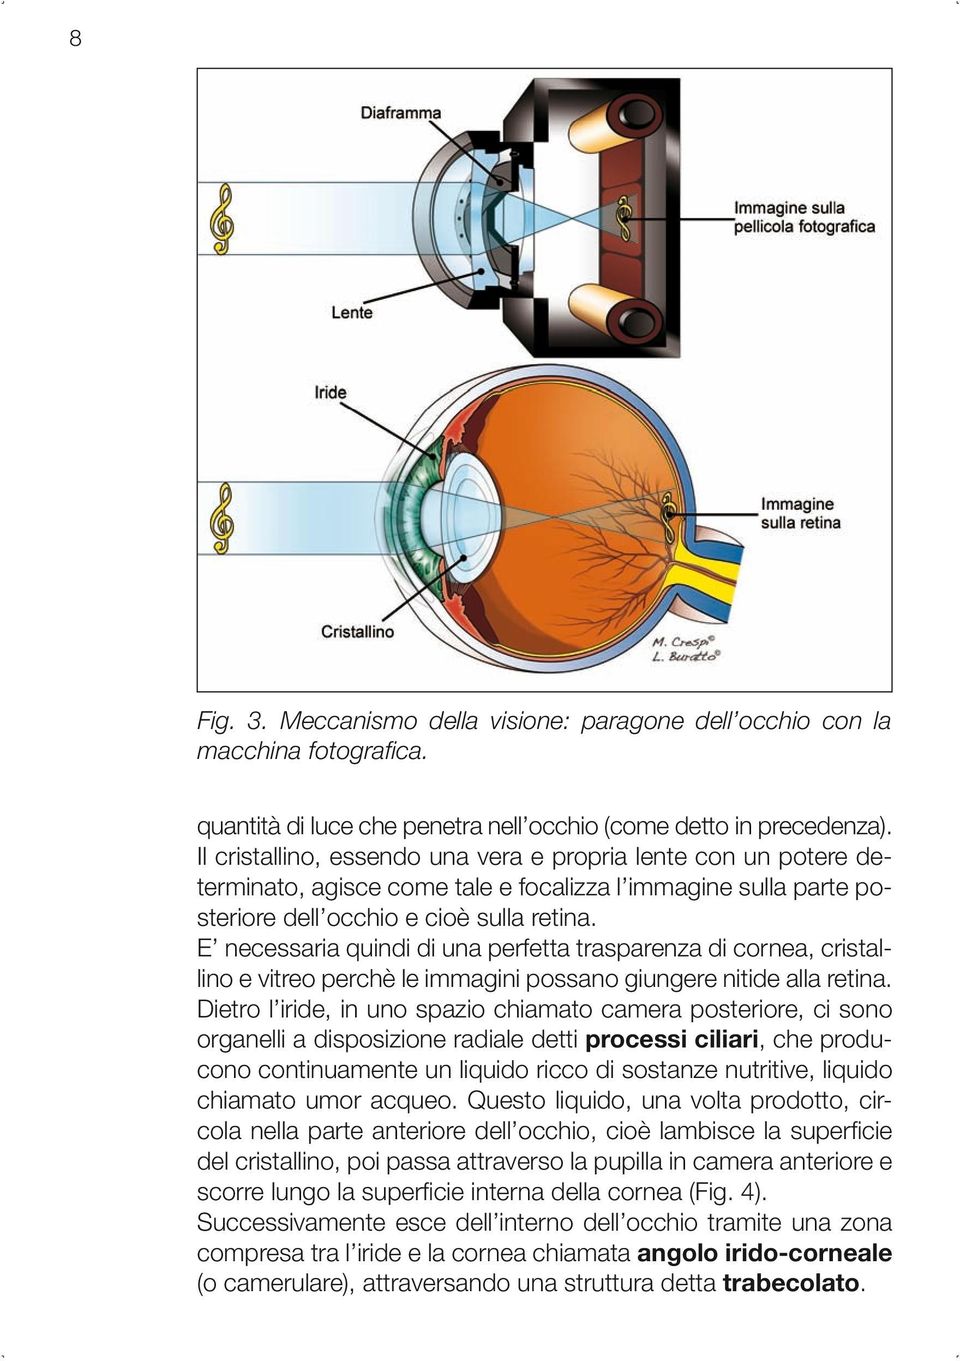 E necessaria quindi di una perfetta trasparenza di cornea, cristallino e vitreo perchè le immagini possano giungere nitide alla retina.